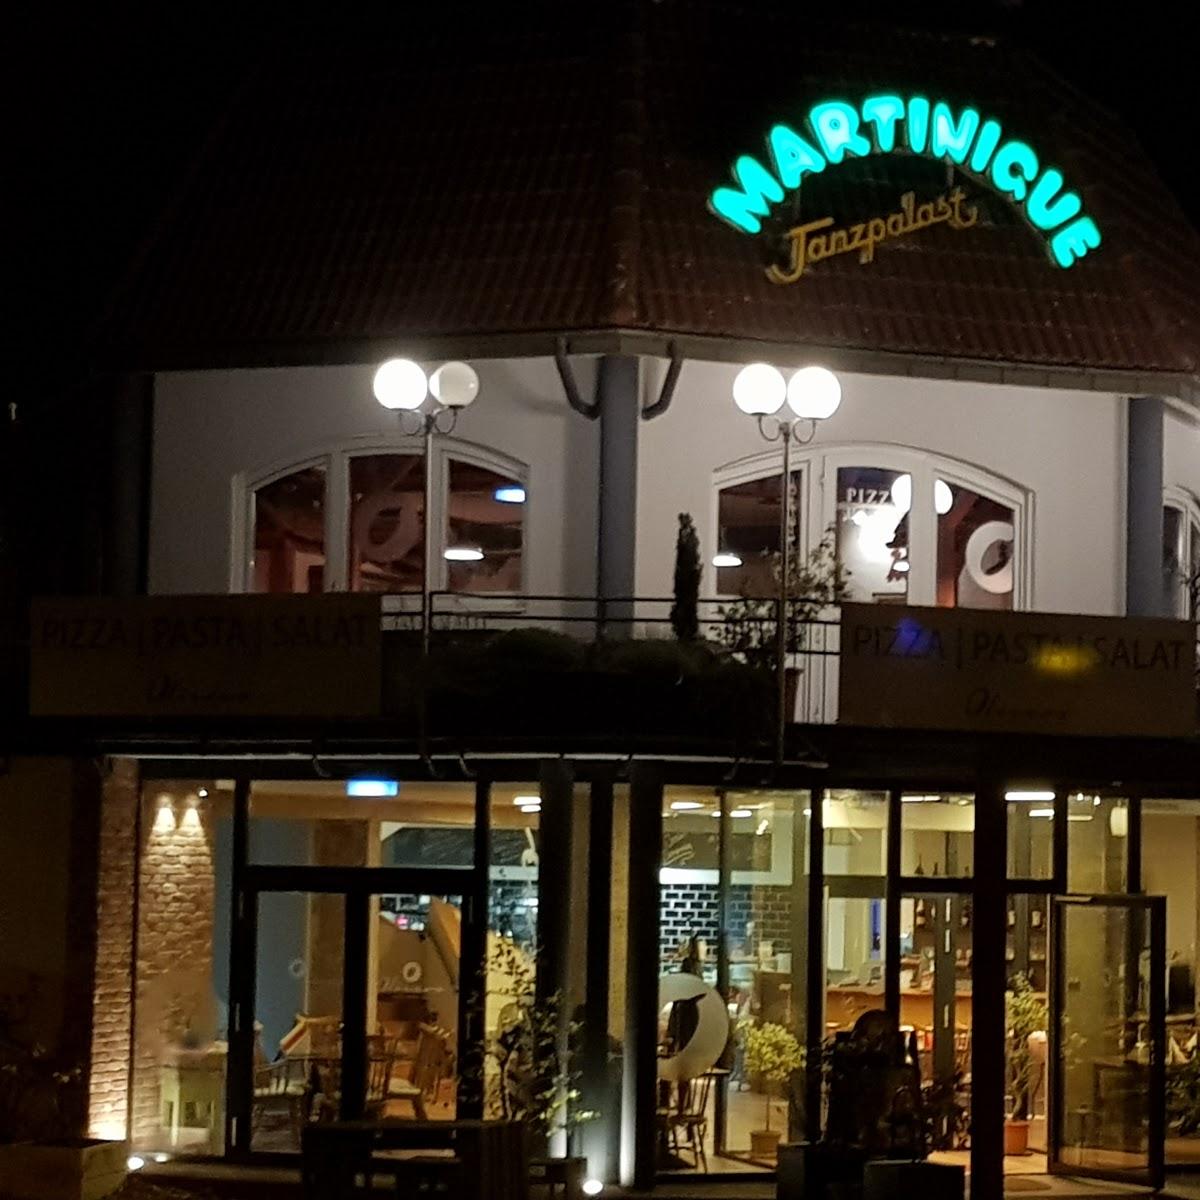 Restaurant "Olivero" in Freudenstadt